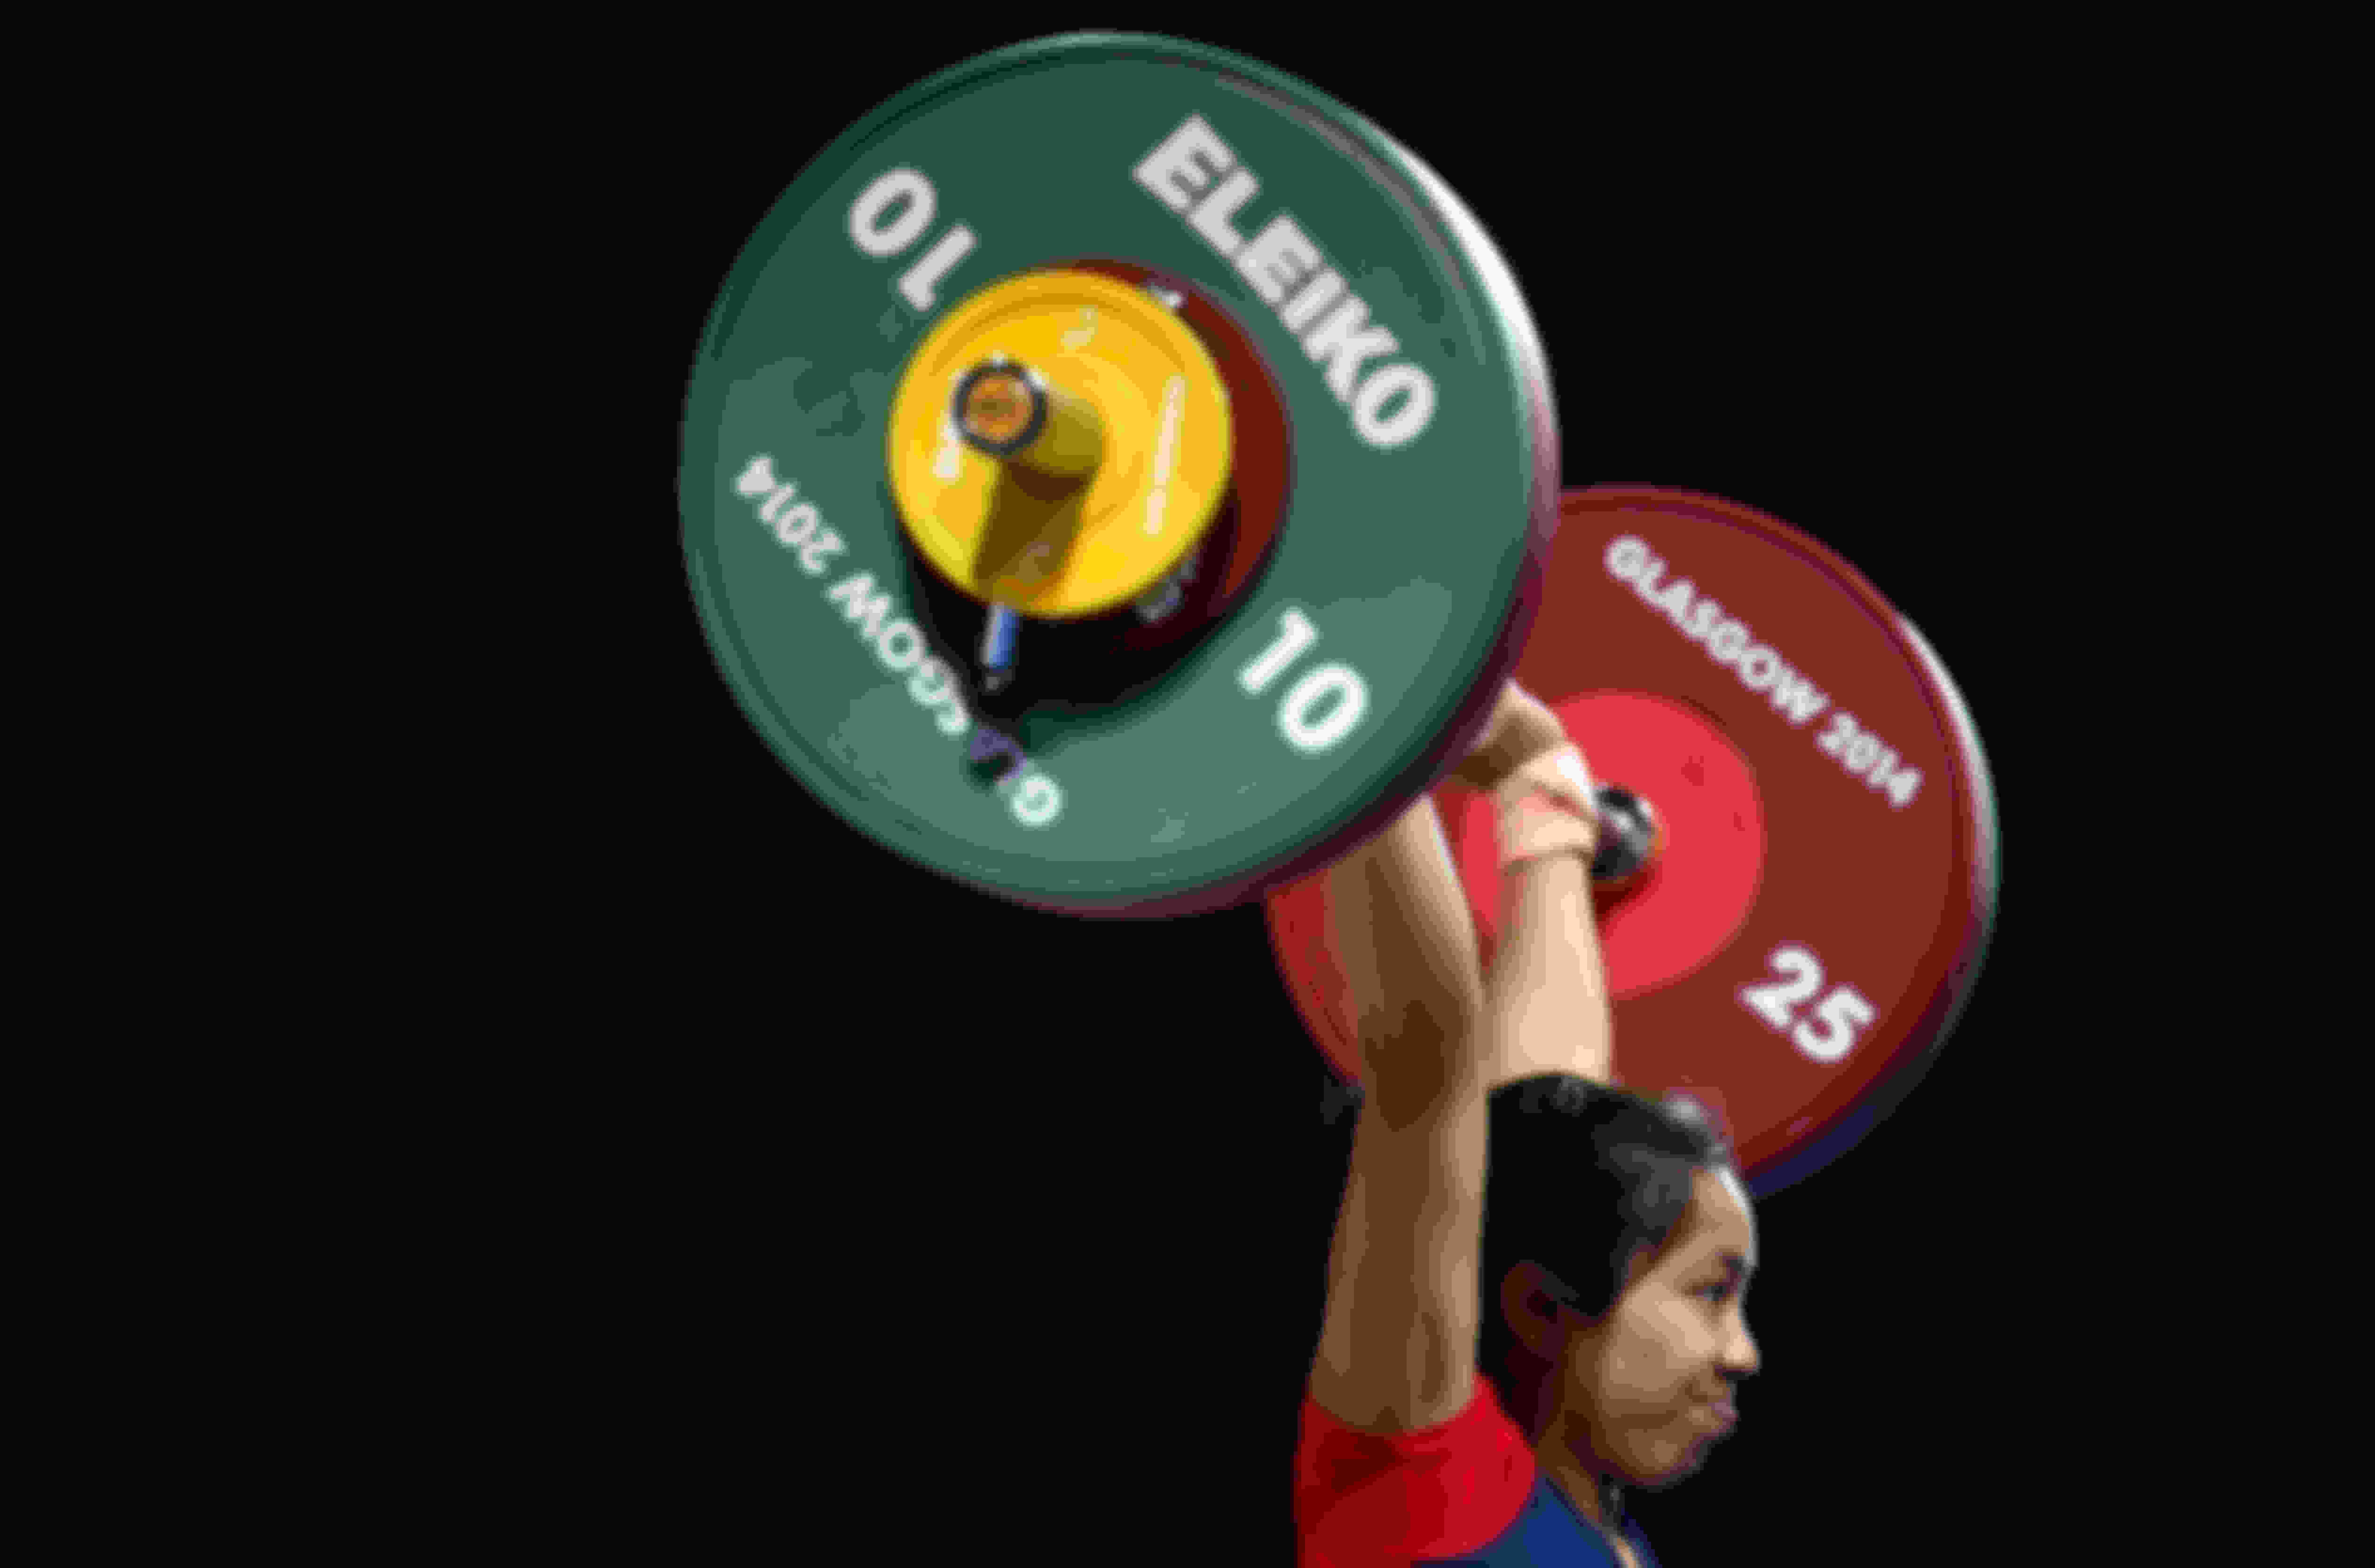 At the 2019 World Weightlifting Championships, Mirabai Chanu lifted 201kg